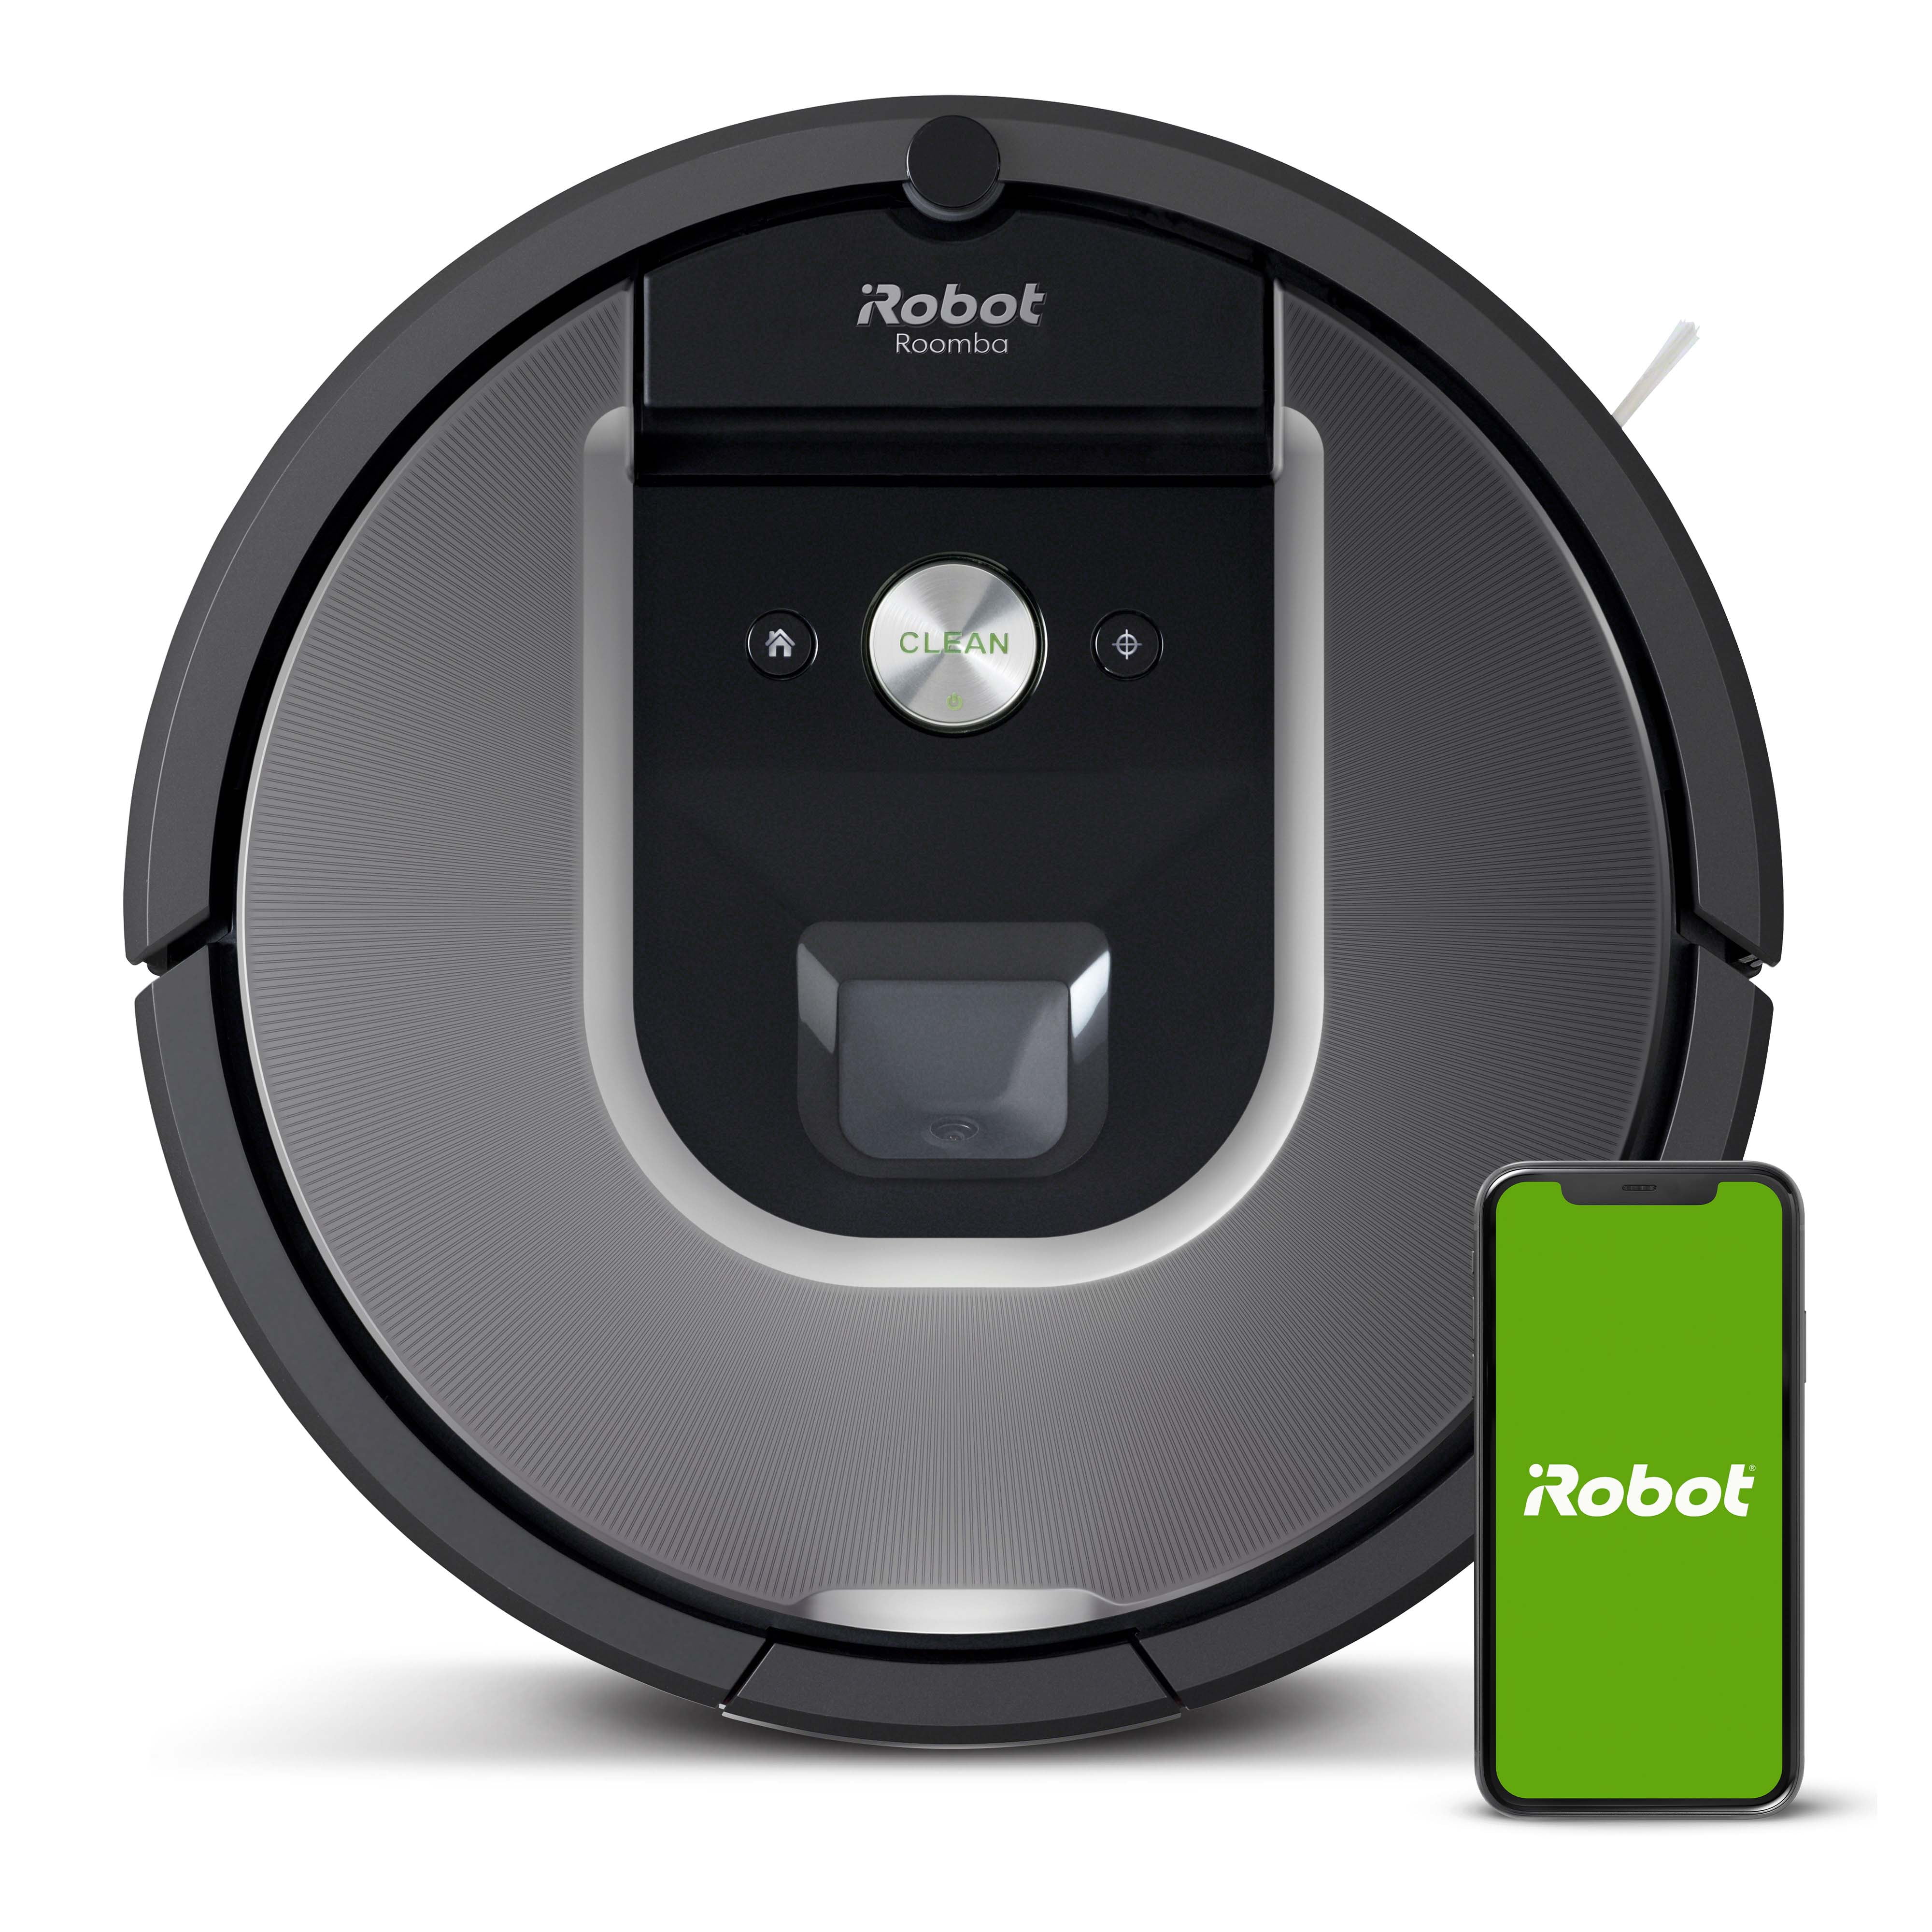 Irobot Roomba 960 Robot Vacuum Wi Fi, Do Roombas Work On Tile Floors